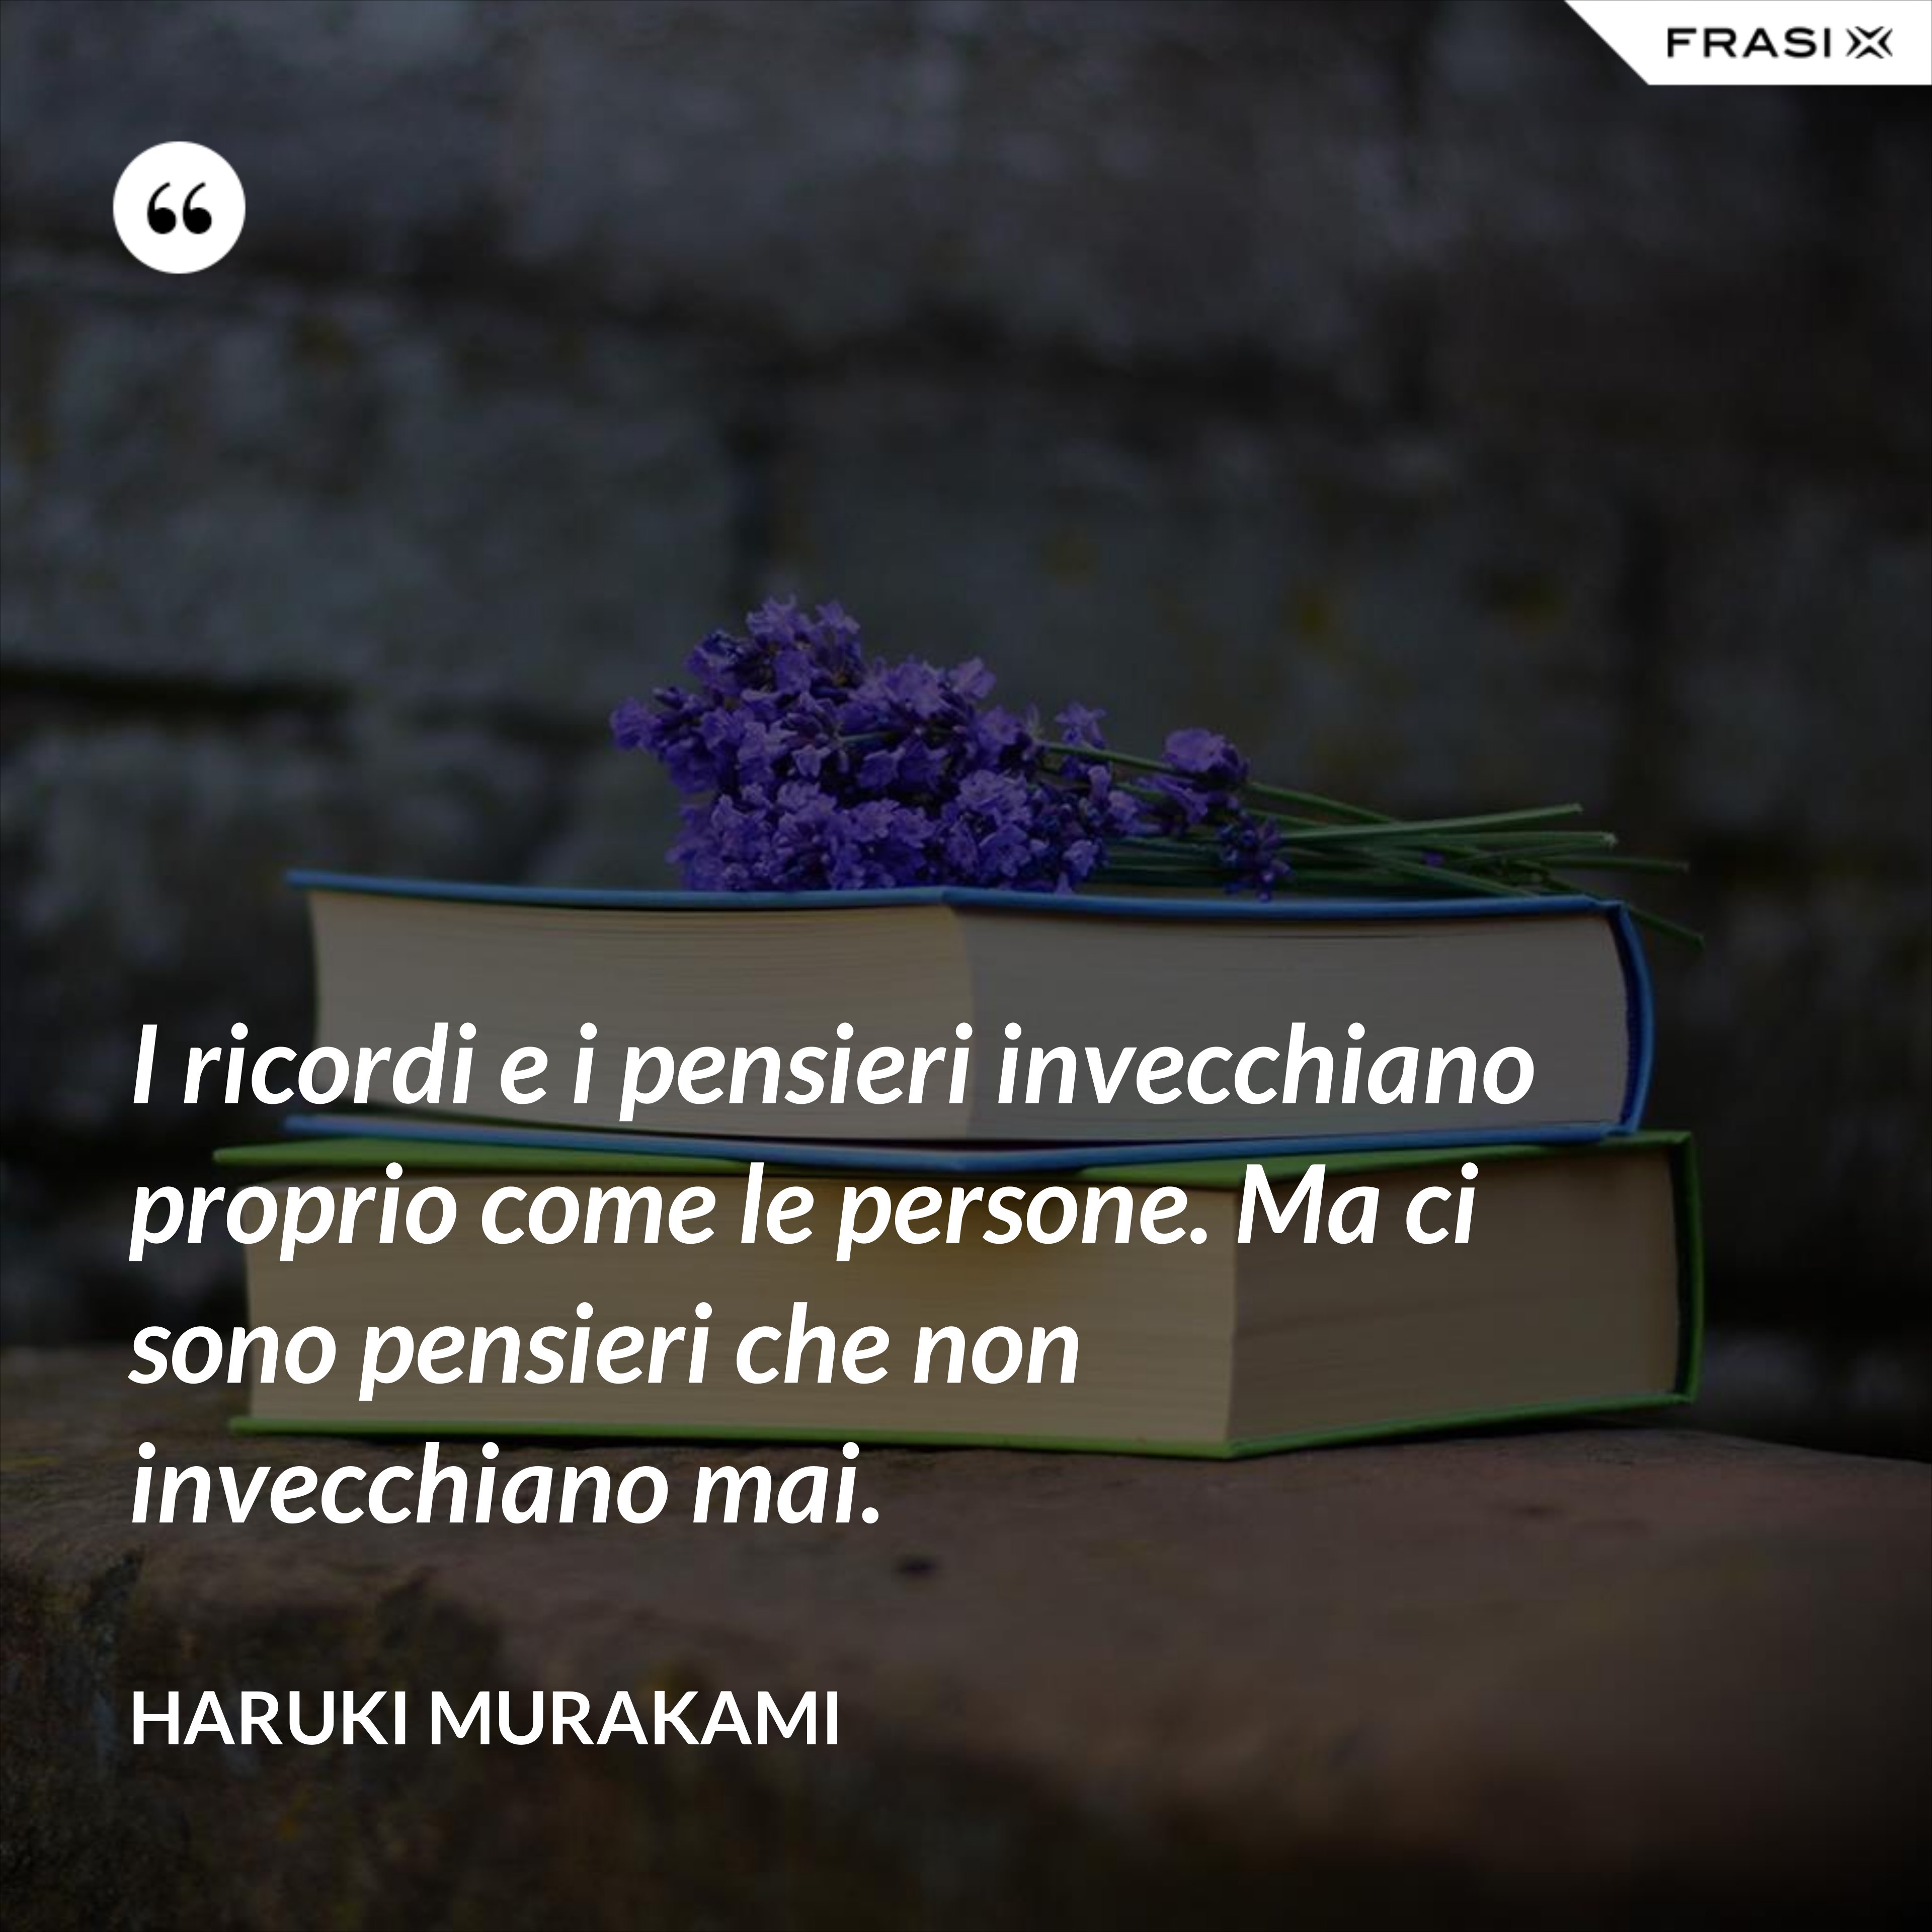 I ricordi e i pensieri invecchiano proprio come le persone. Ma ci sono pensieri che non invecchiano mai. - Haruki Murakami